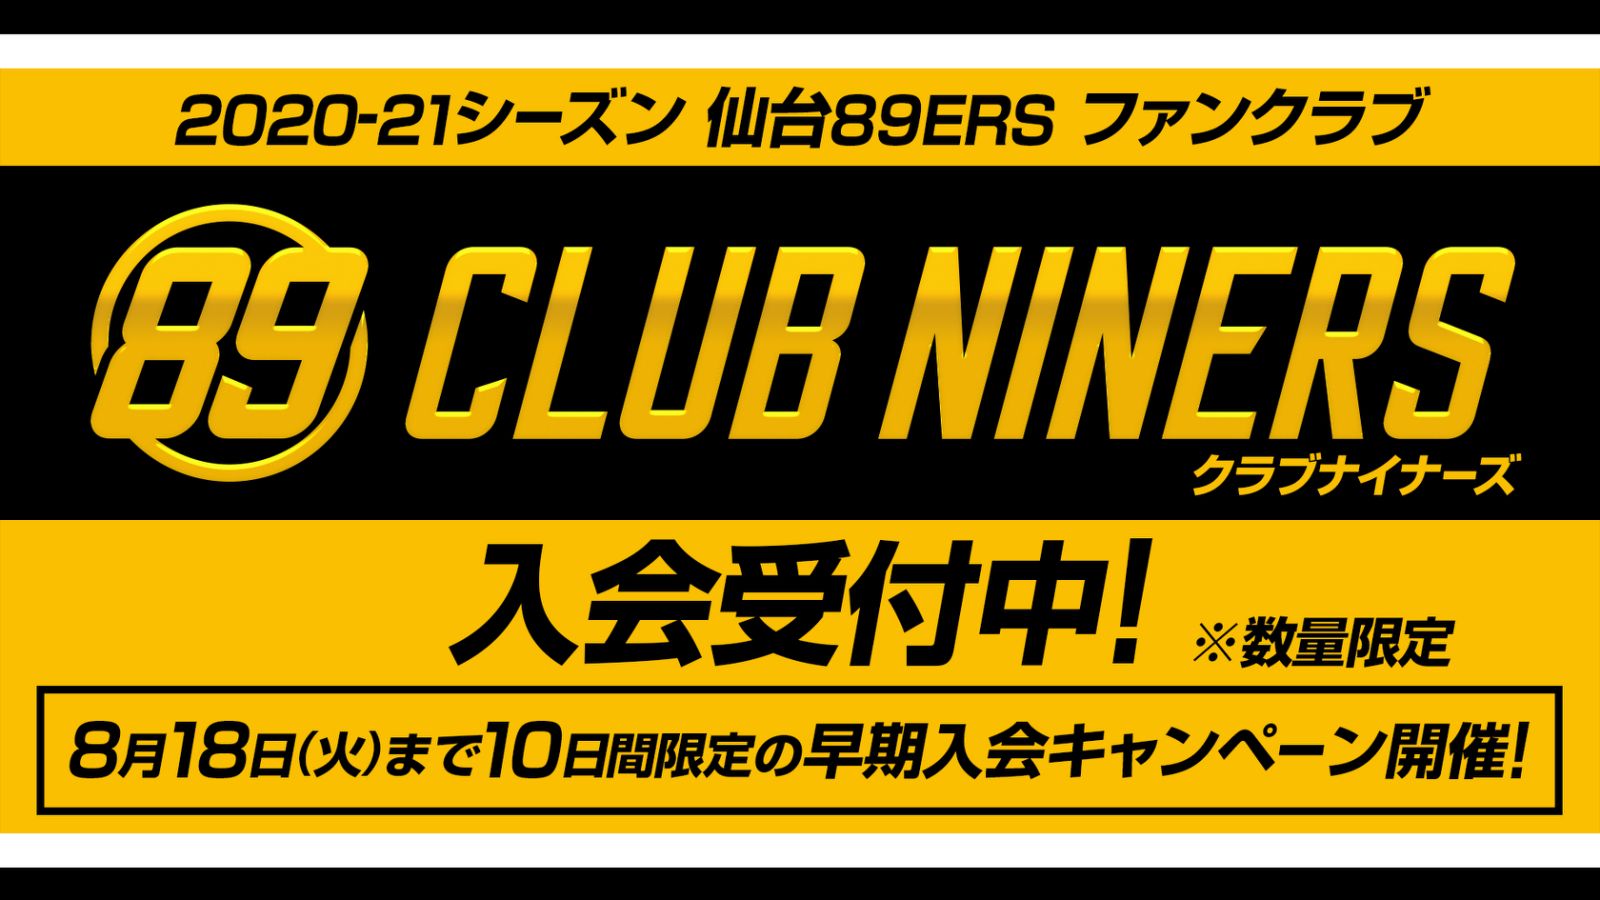 2020-21シーズン 仙台89ERSファンクラブ「CLUB NINERS」メンバー入会 